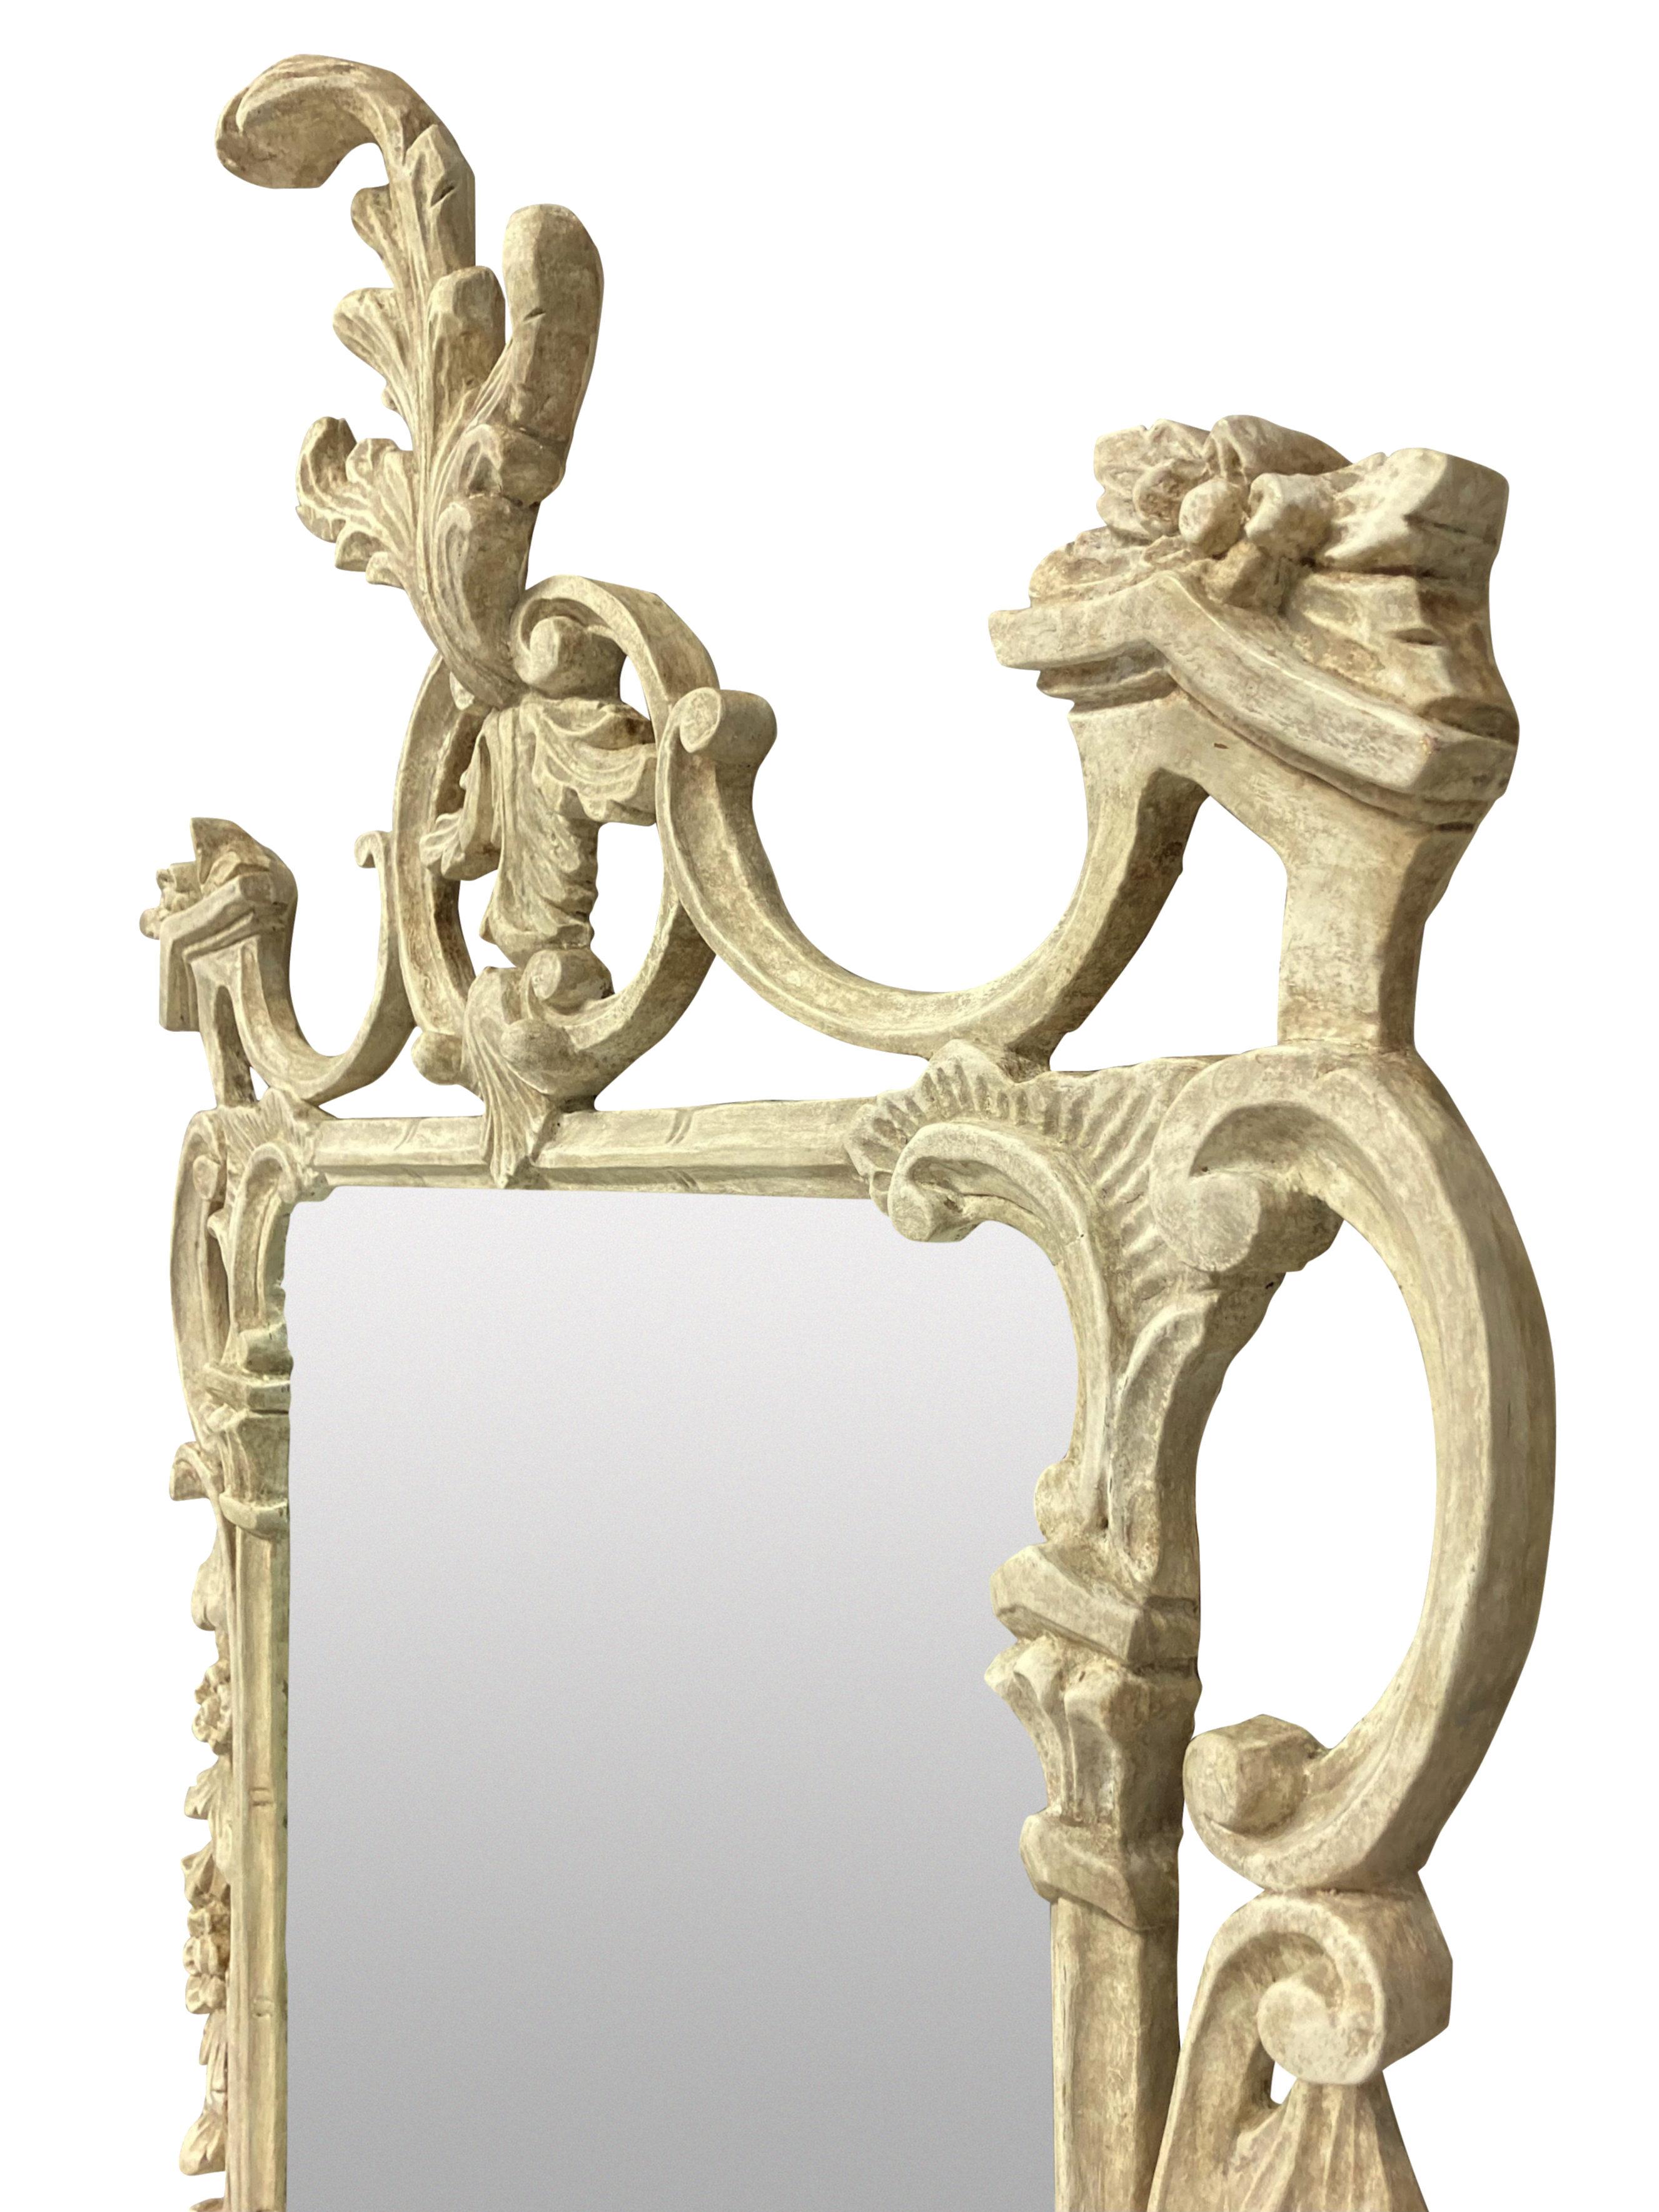 Un miroir anglais de style Chippendale finement sculpté et peint, de couleur ivoire, avec une plaque de miroir ultérieure.